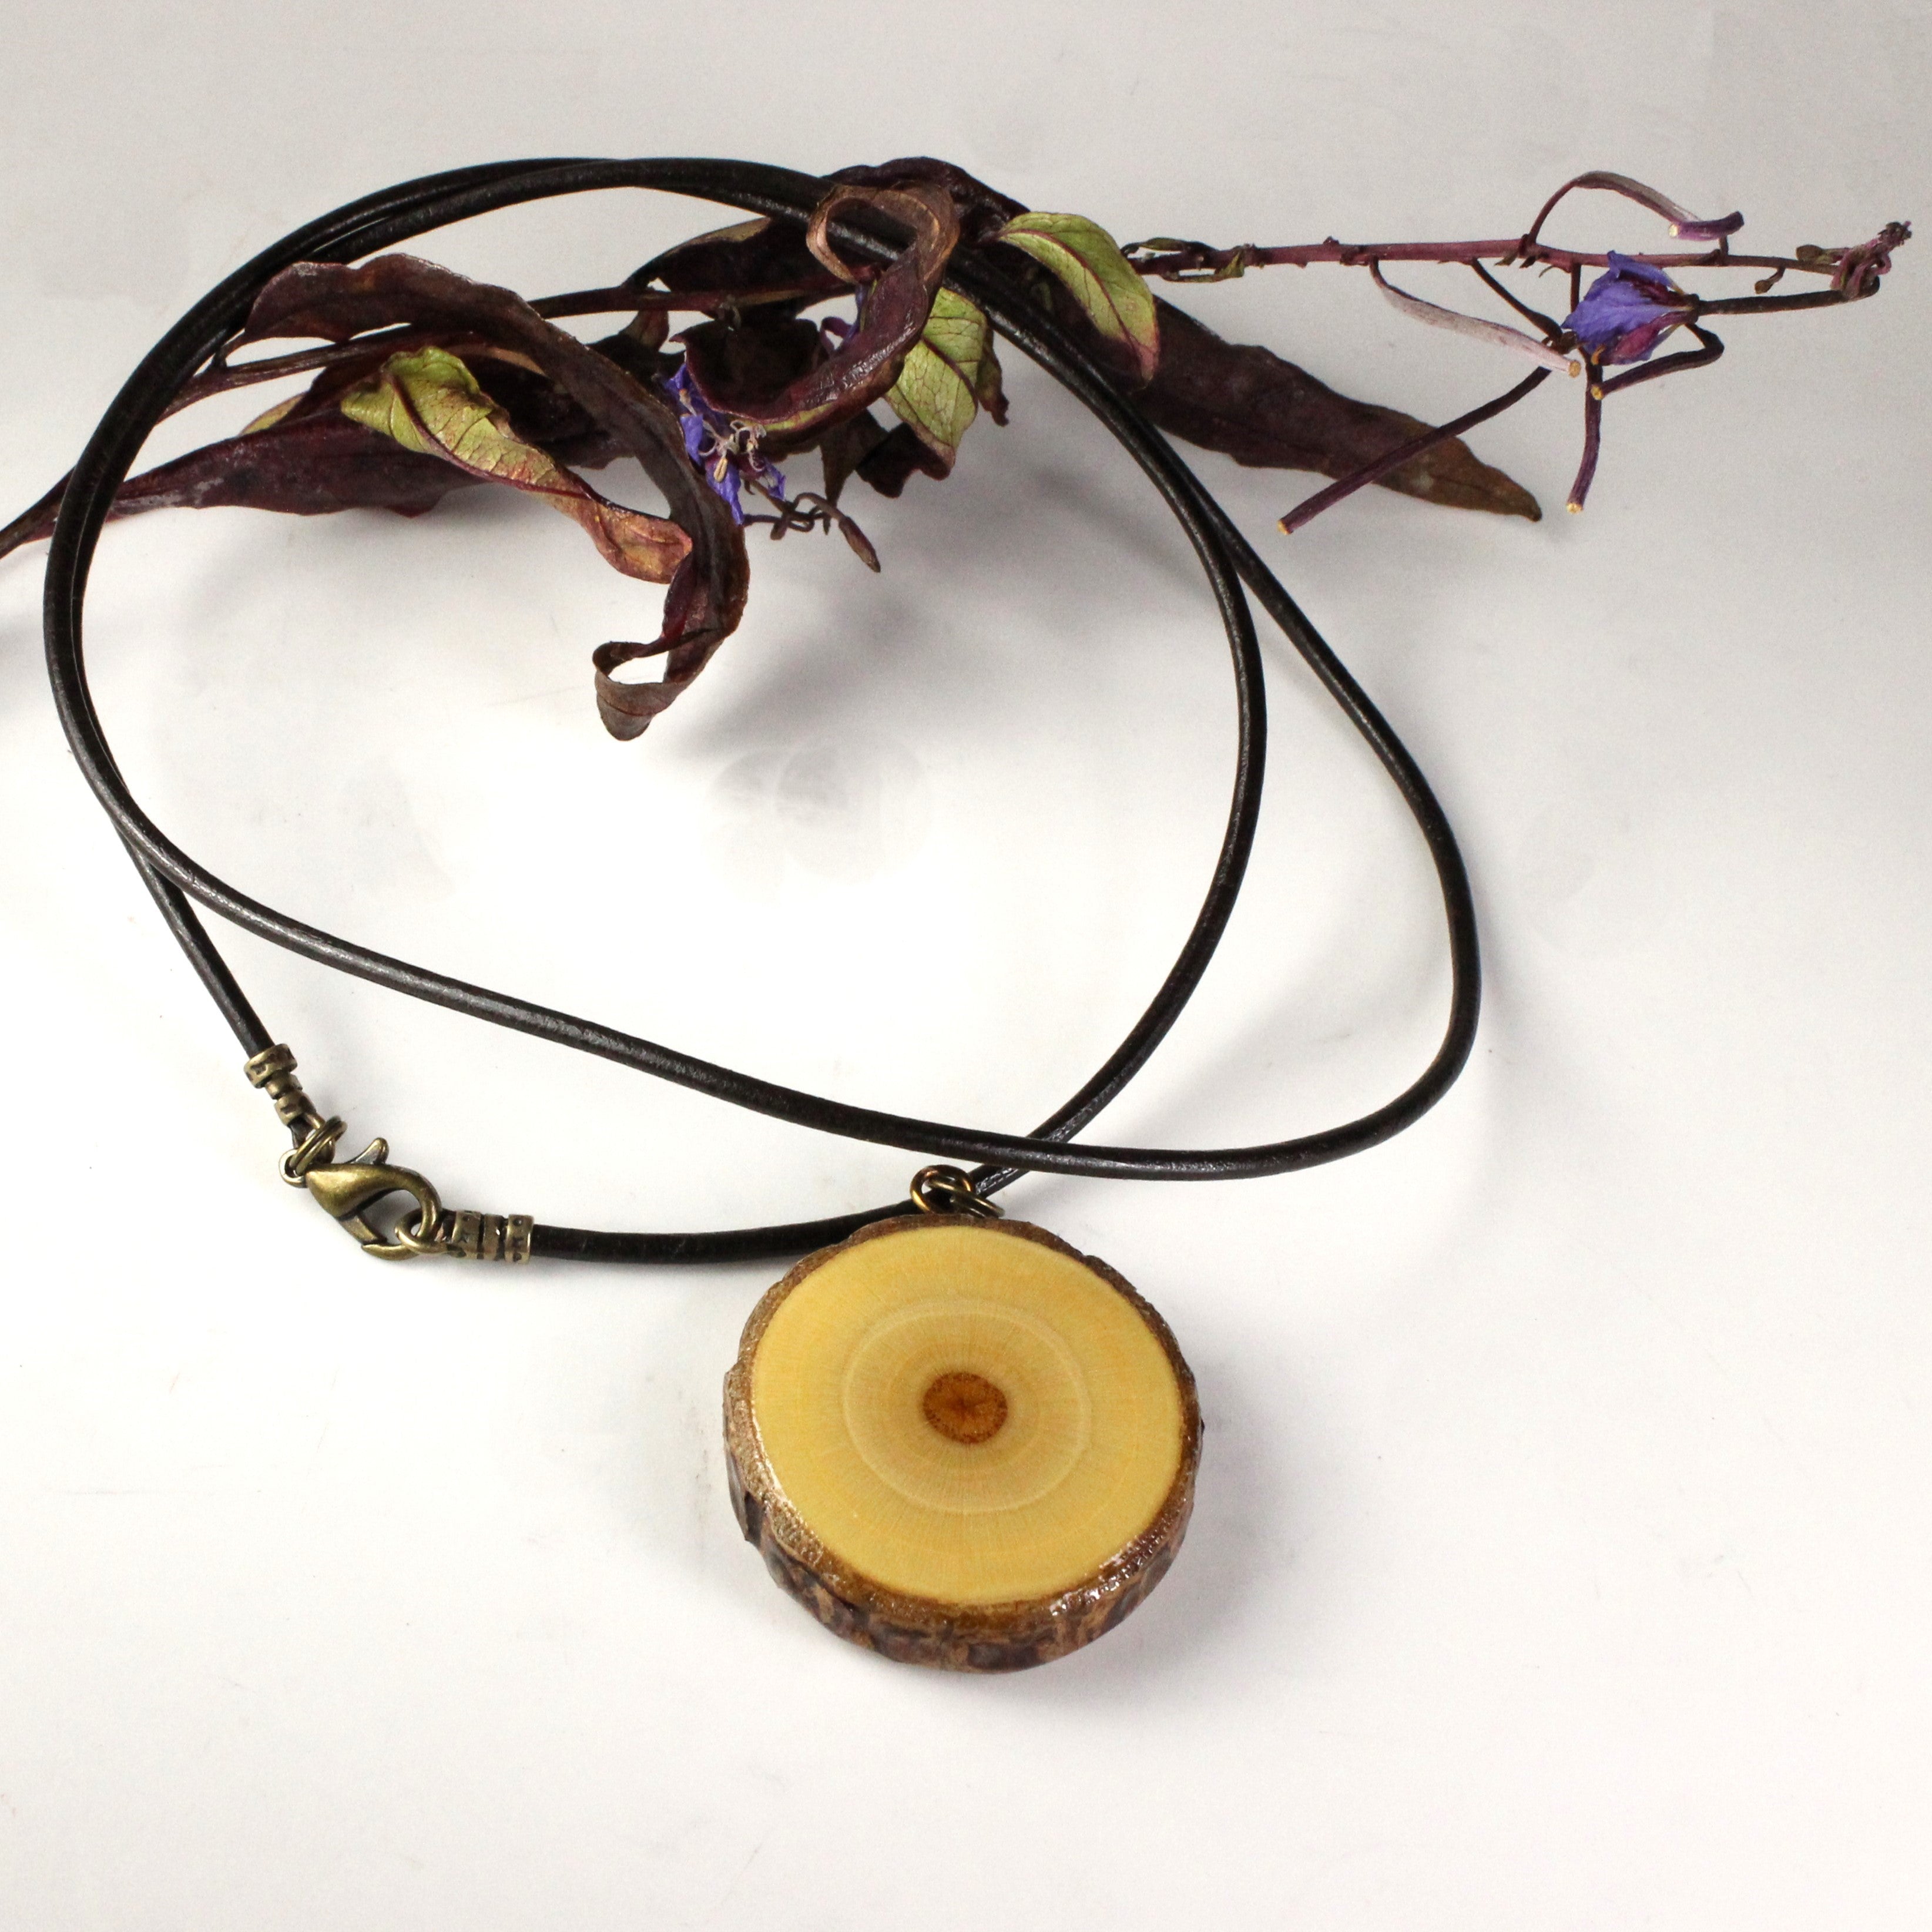 Elderwood necklace